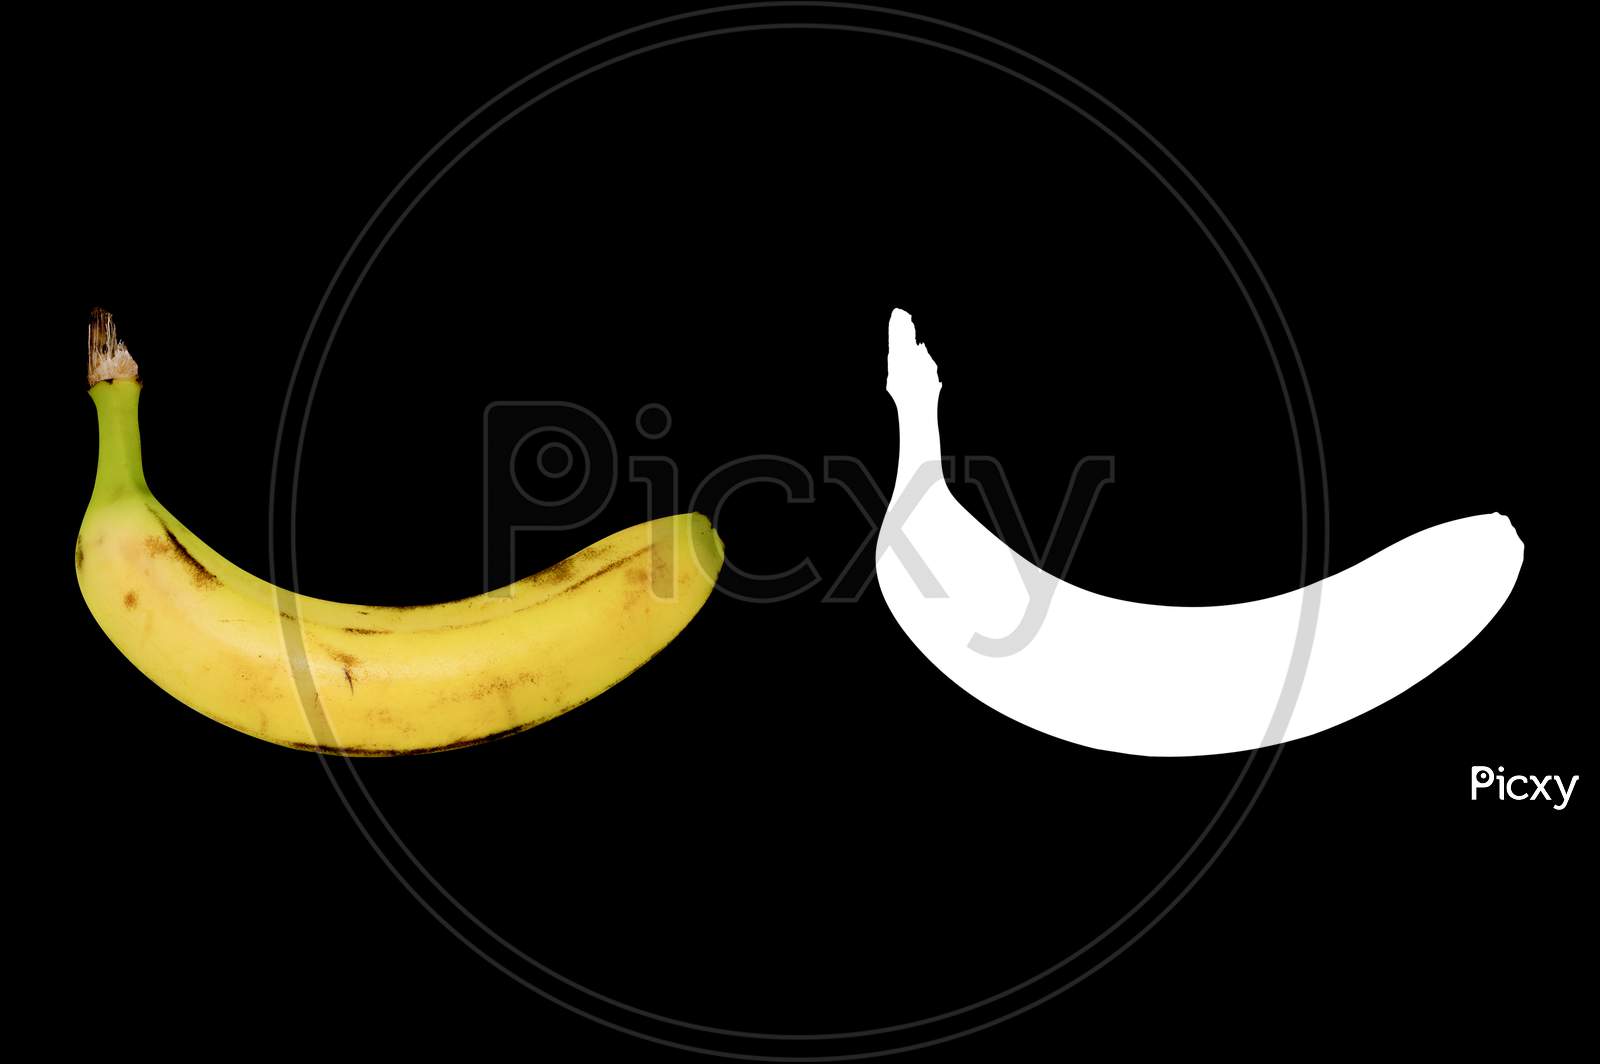 Ripe Yellow Banana